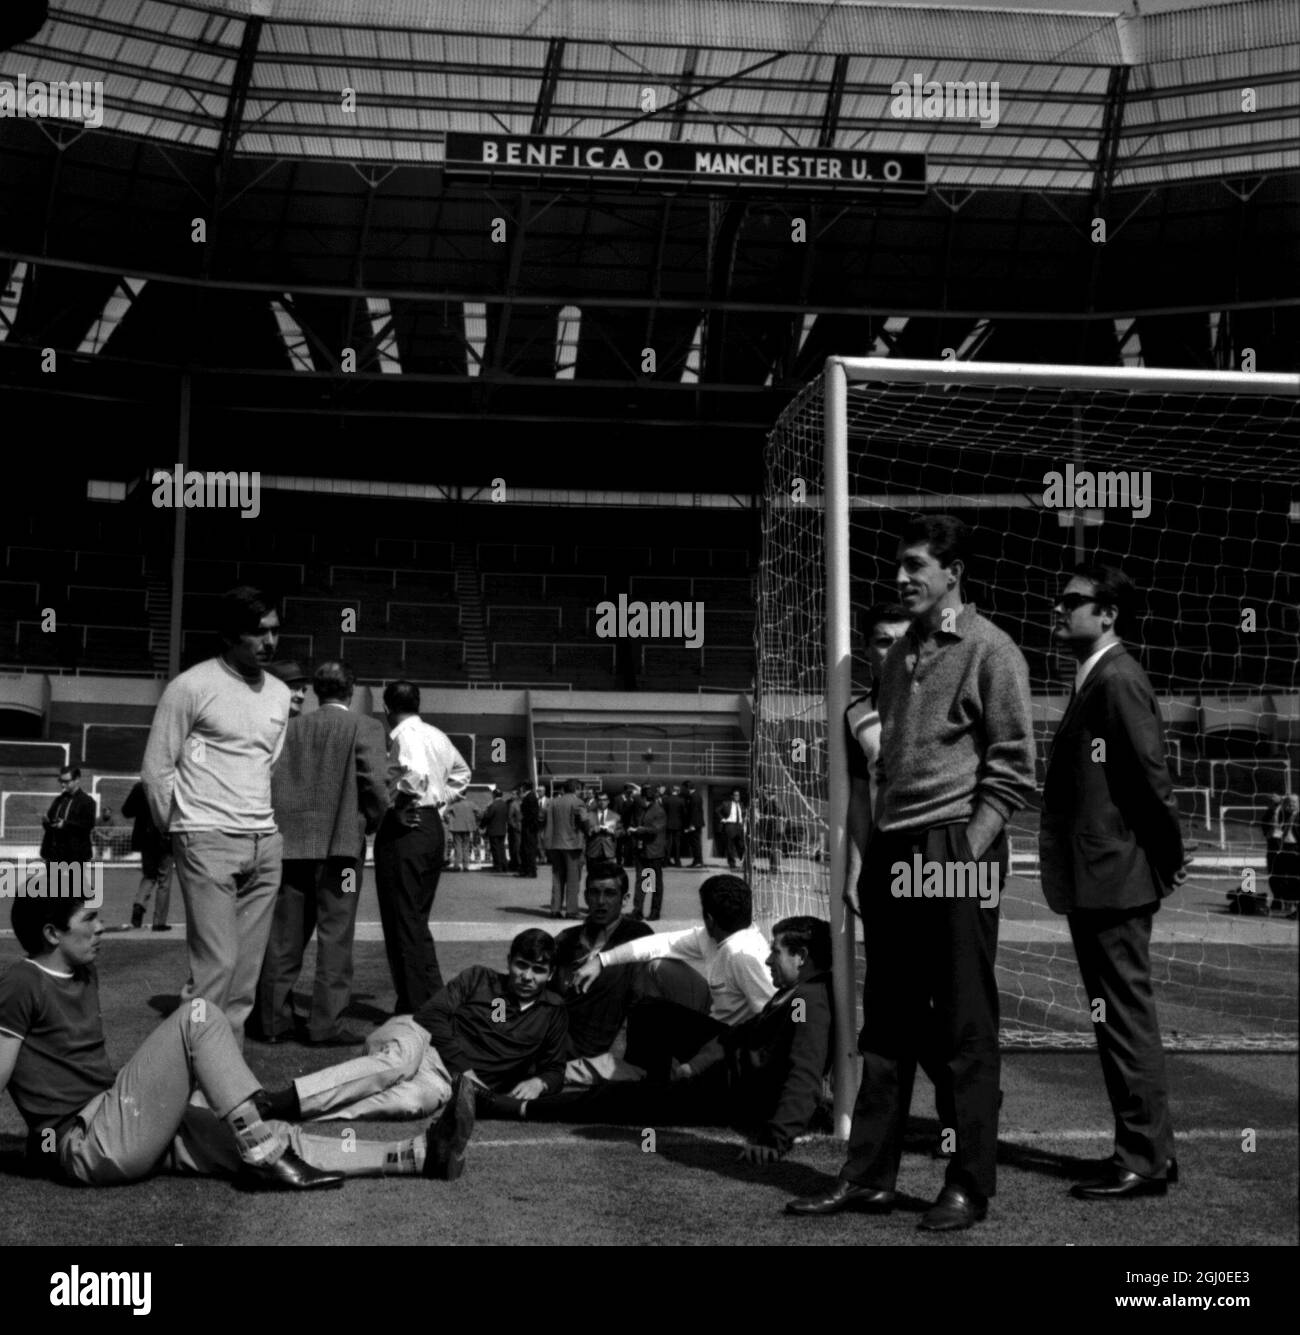 Einige der Benfica-Spieler treffen Manchester United morgen Abend beim Europameisterschaftsfinale in Wembley und entspannen sich in der Sonne bei einem der Tore im berühmtesten Fußballstadion Englands, das sie heute zu einer Trainingseinheit besuchten. Unter ihnen sind Graca (auf dem Boden in dunklem Hemd und heller Hose), Torres (weißes Hemd, das von der Kamera weg schaut), Simoes (an den Pfosten gelehnt) und Jose Augusto (vorne rechts mit Händen in Taschen). Mai 1968 Stockfoto